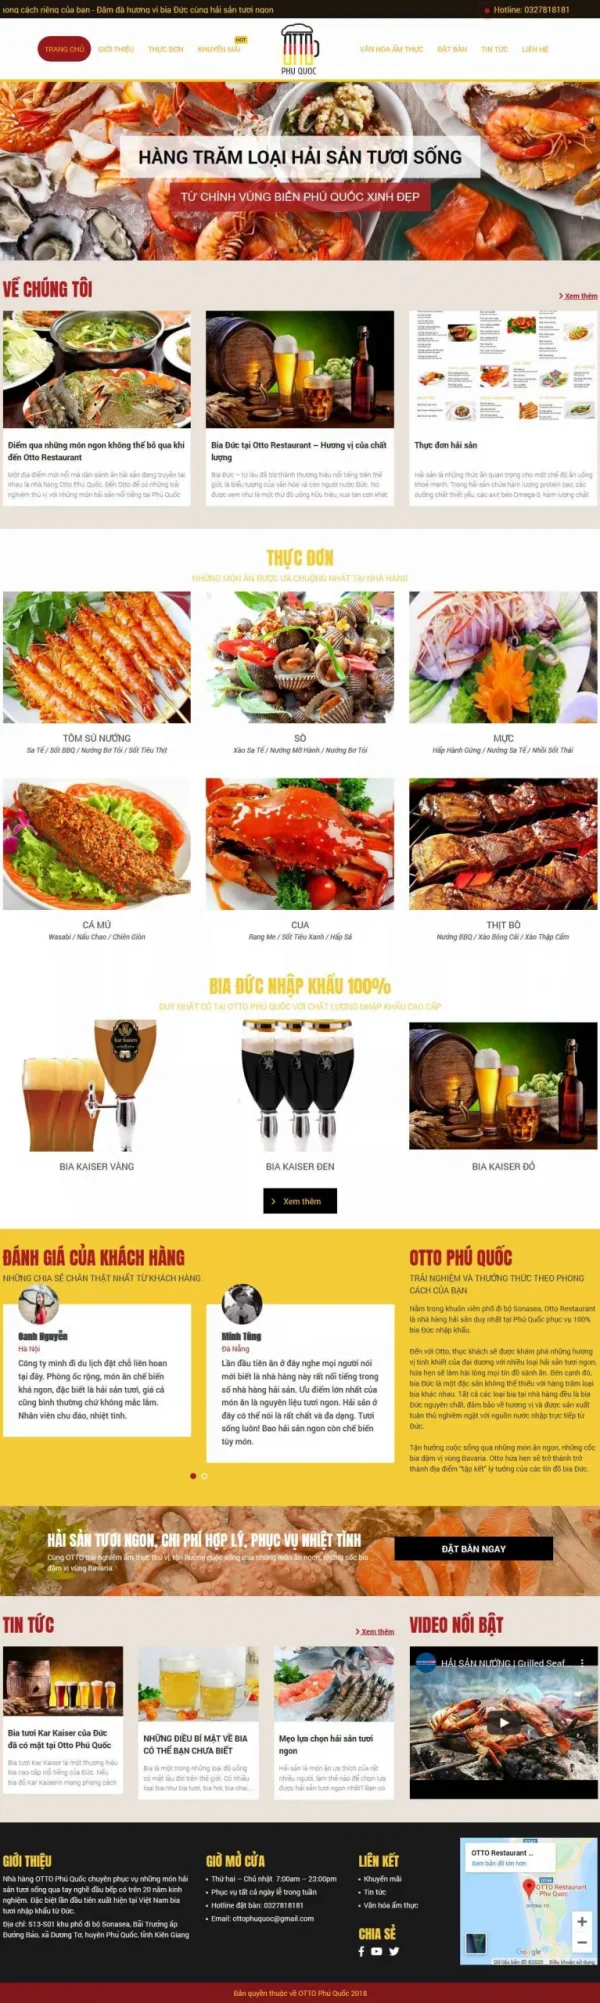 Mẫu giao diện website nhà hàng hải sản Otto Phú Quốc